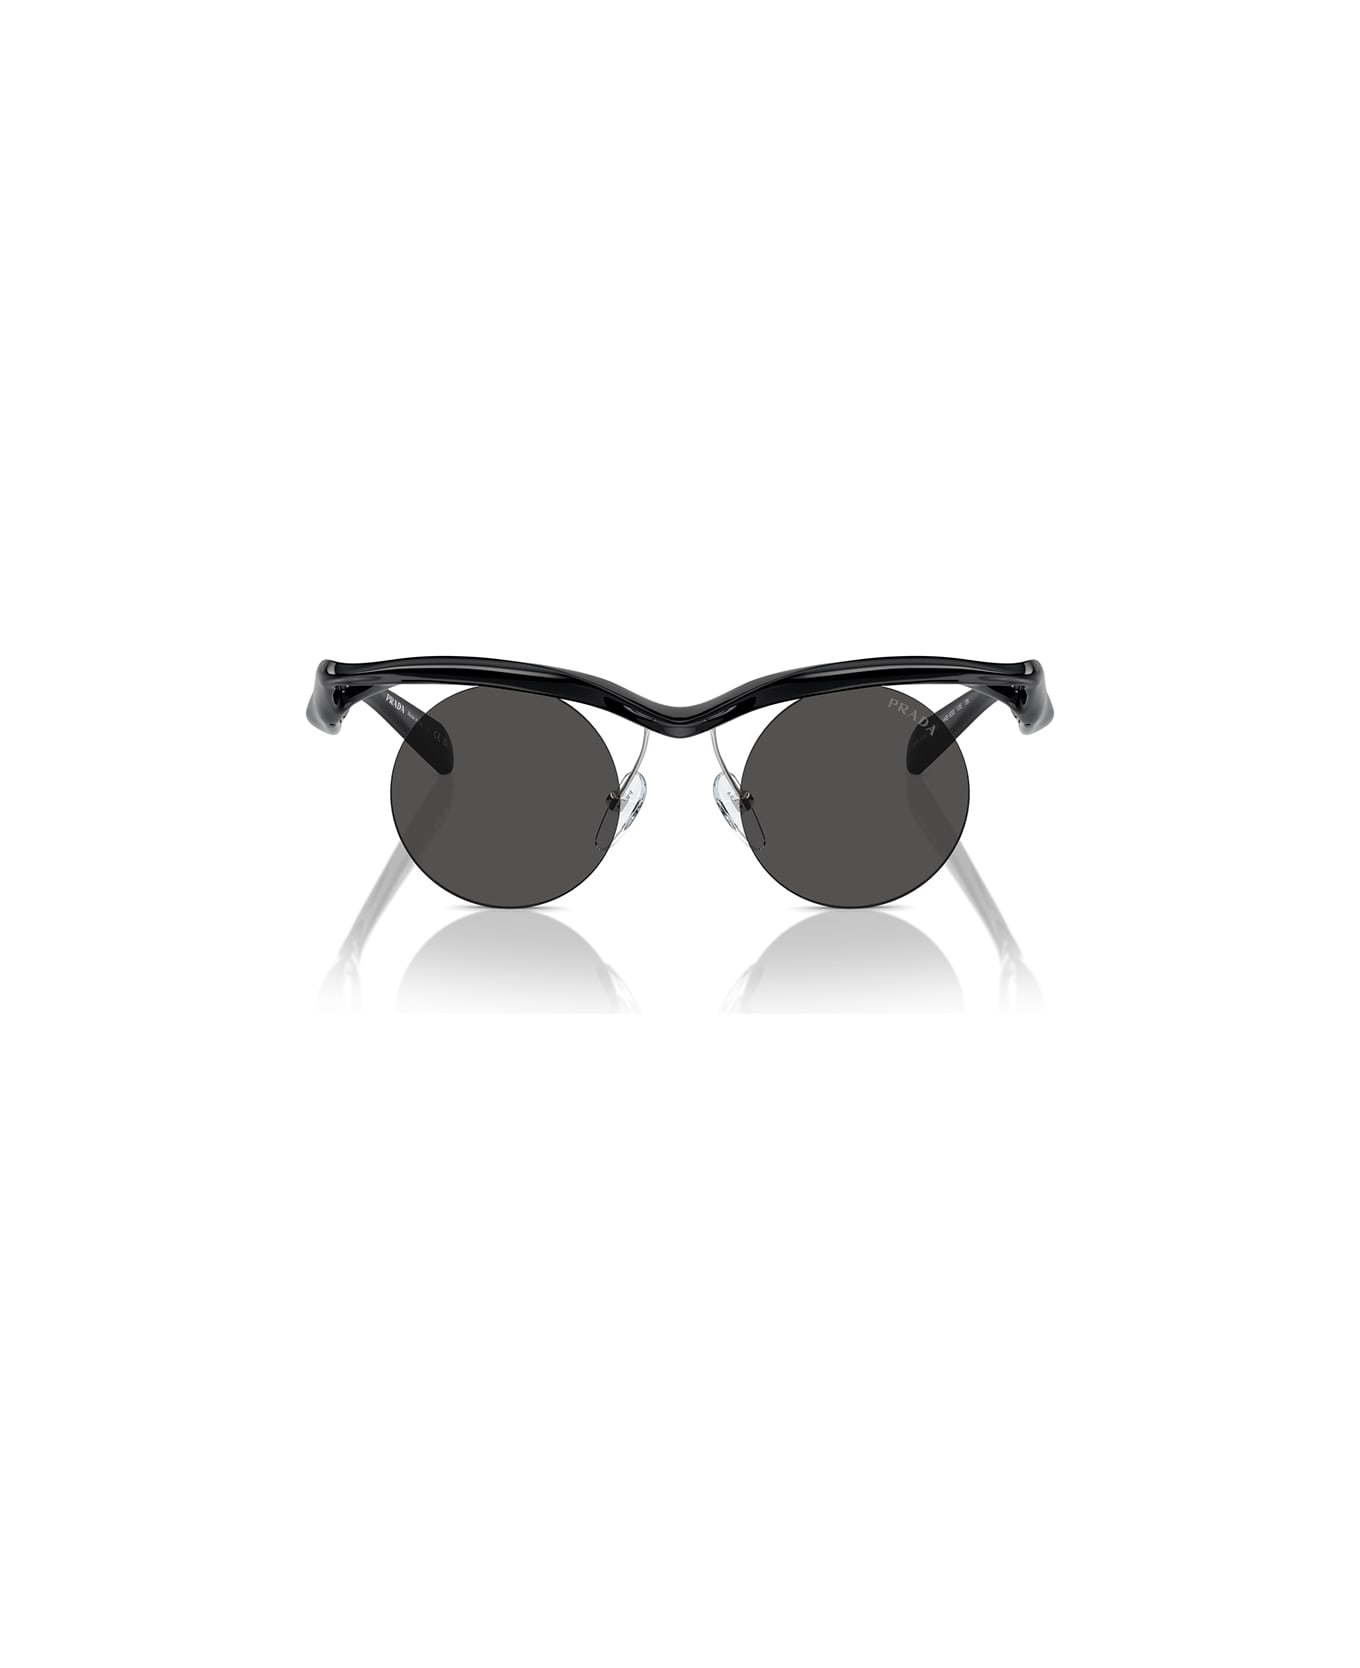 Prada Eyewear Sunglasses - Nero/Nero